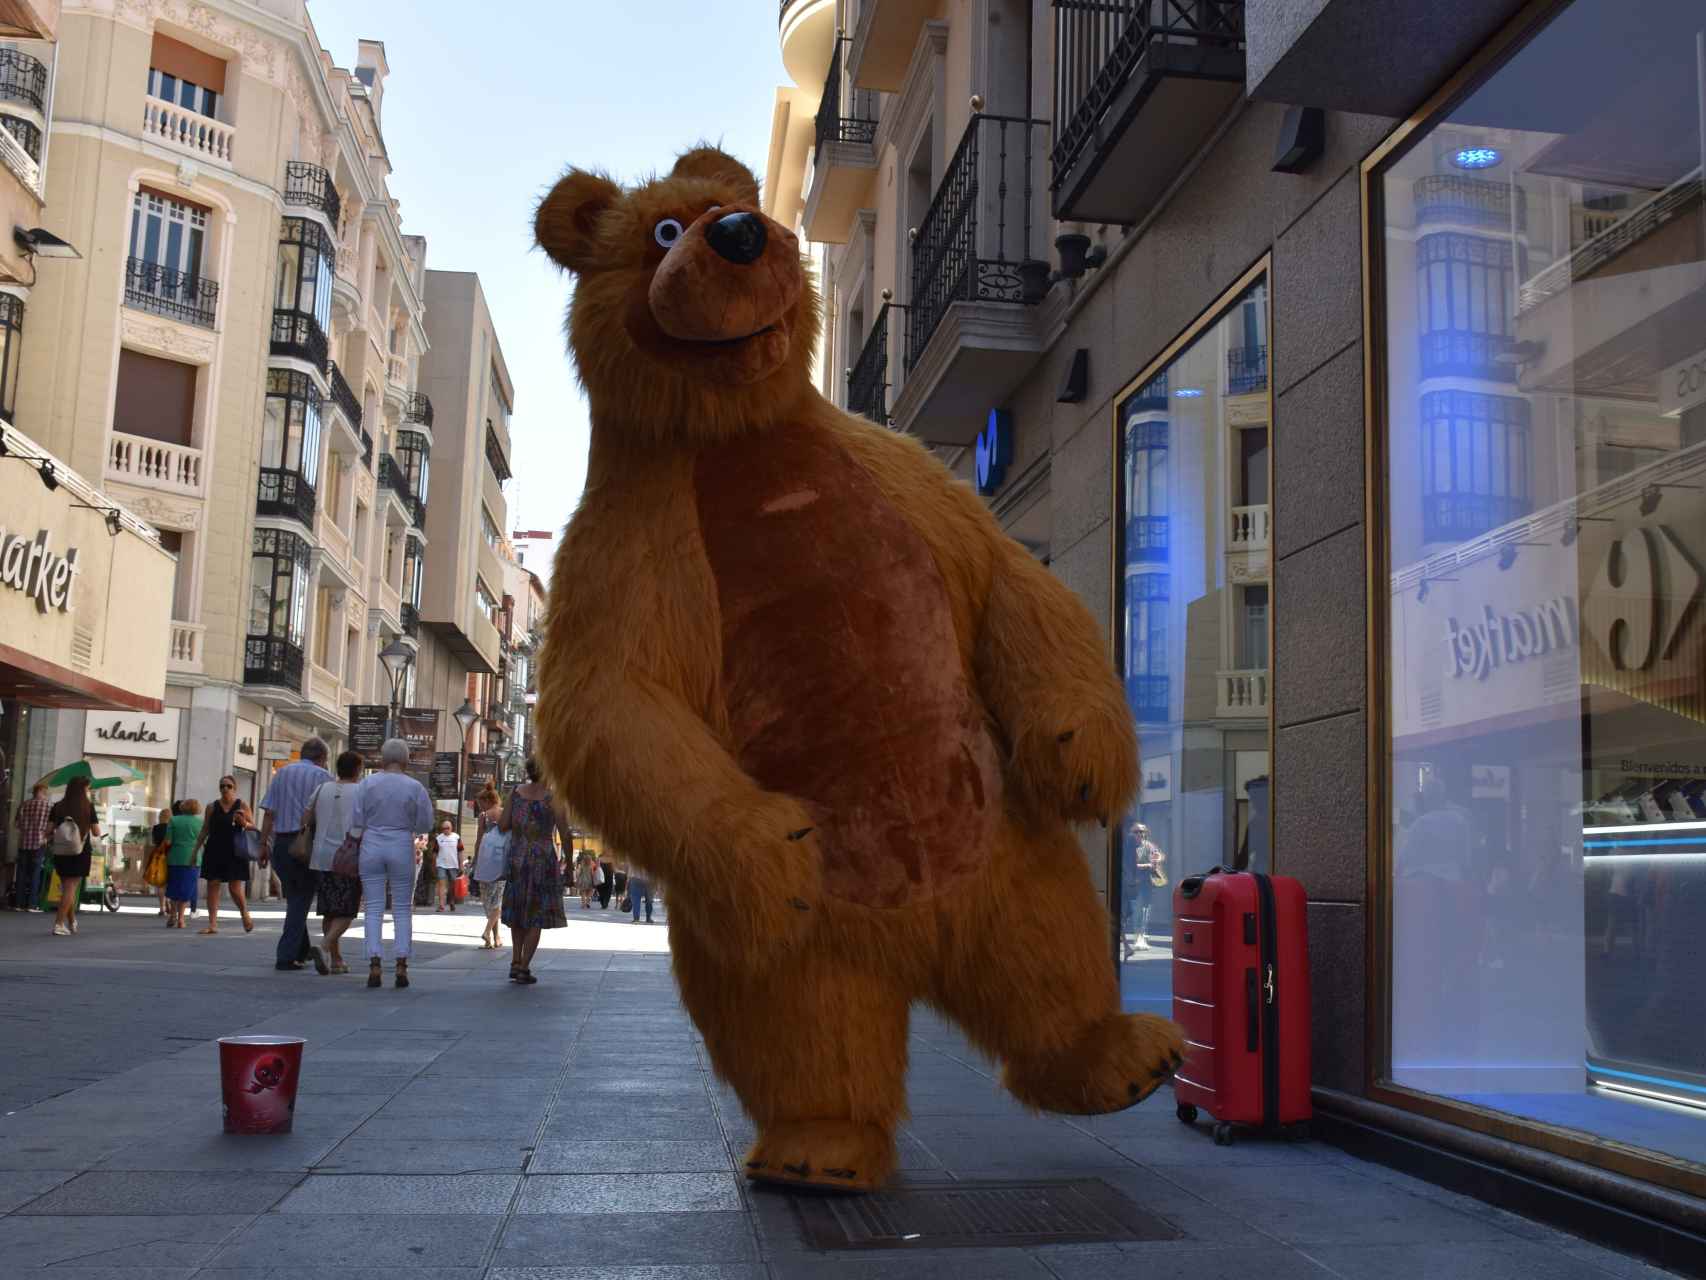 Contiene vida pañuelo de papel El sorprendente oso que desafía a la ola de calor en pleno centro de  Valladolid: "No me puedo quejar, no me va nada mal"